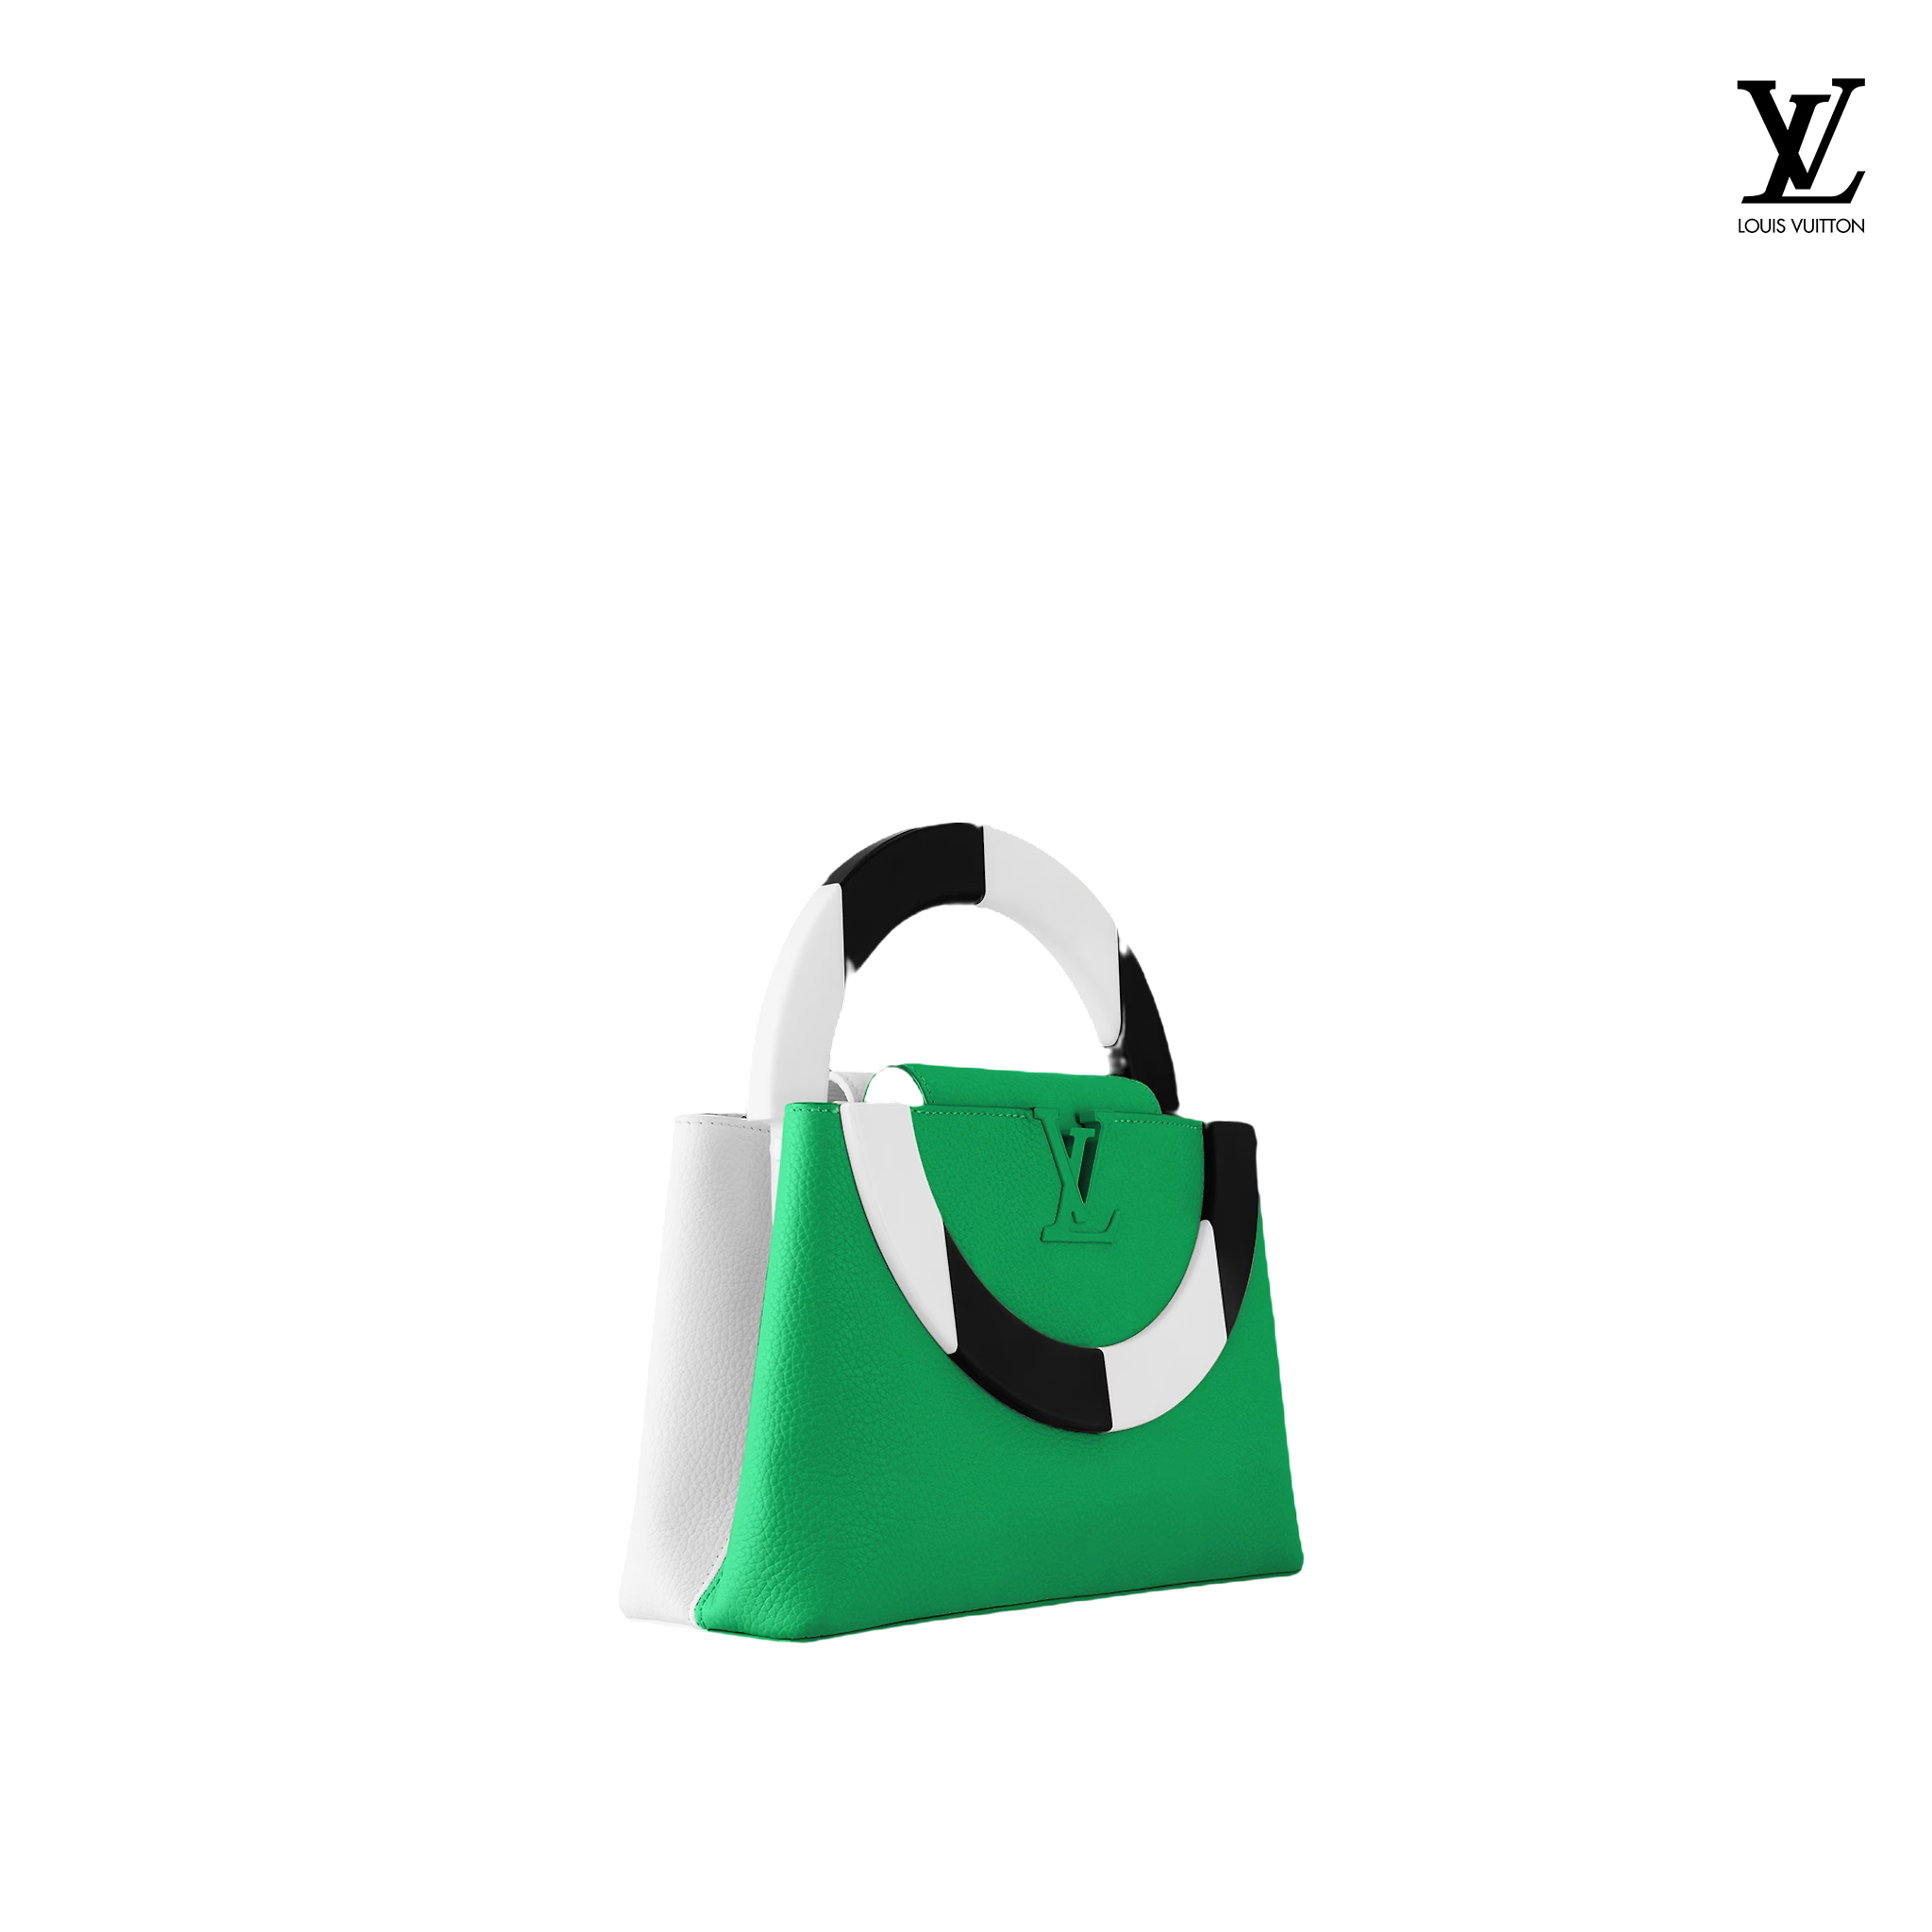 Louis Vuitton Capucines MM Green handbags